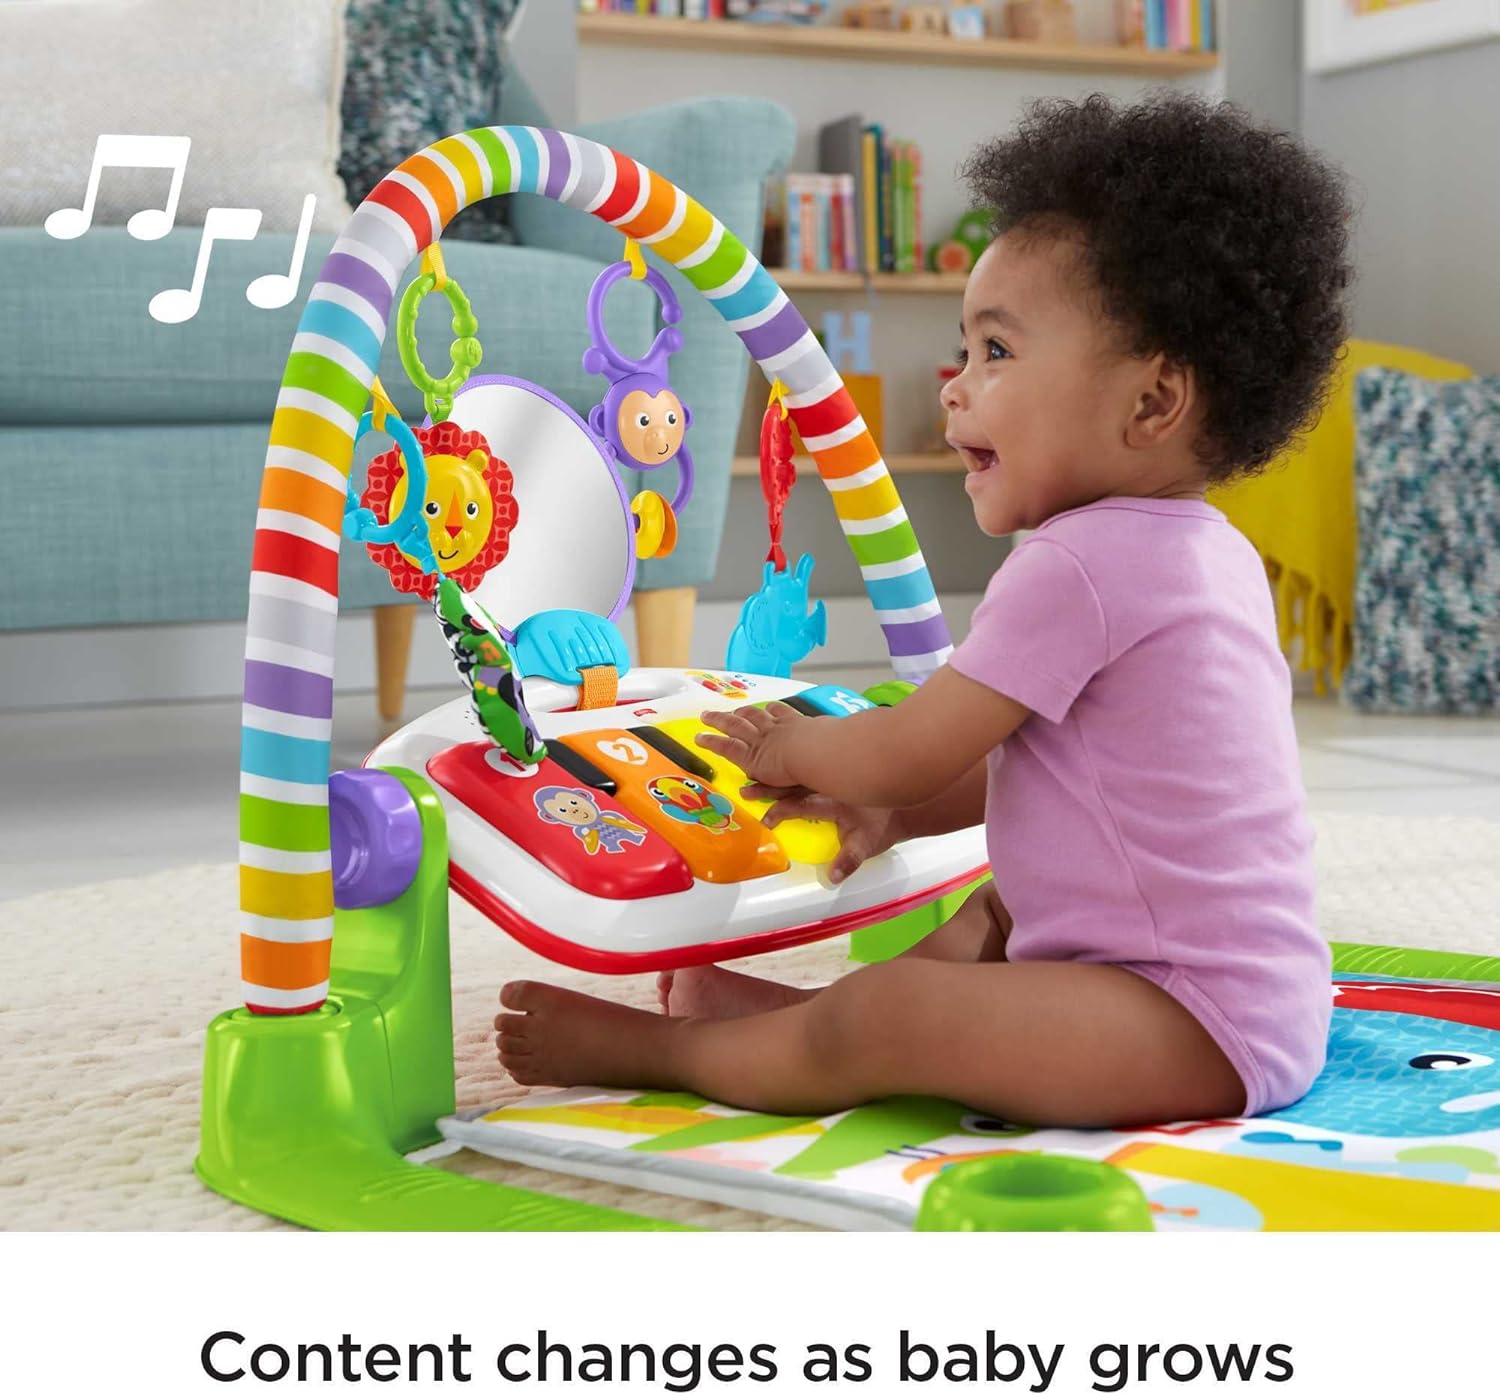 費雪牌寶寶遊戲墊踢踏鋼琴健身音樂階段學習 適用新生兒到幼兒 豪華版送禮